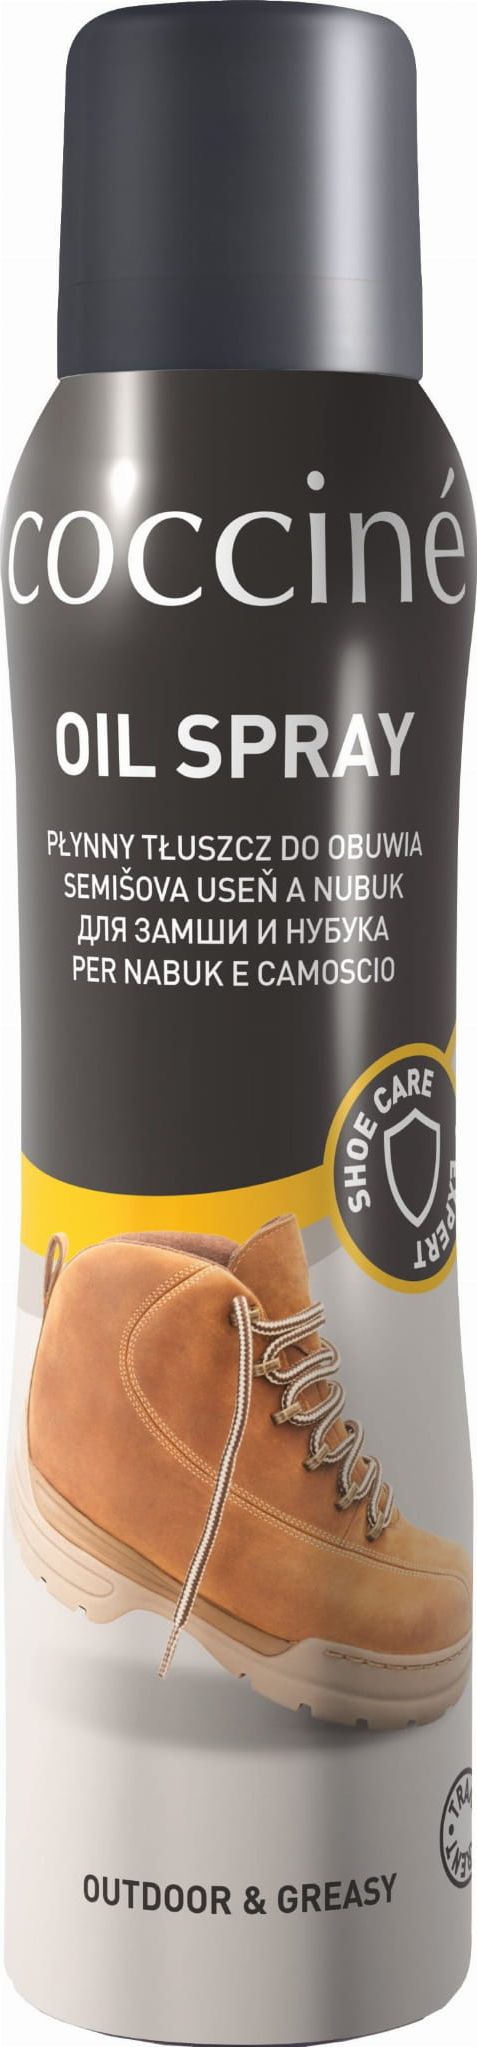 Kaps Oil Spray Plynny tluszcz do obuwia Coccine 150ml 72890 (5907546514624) Kopšanas līdzekļi apaviem